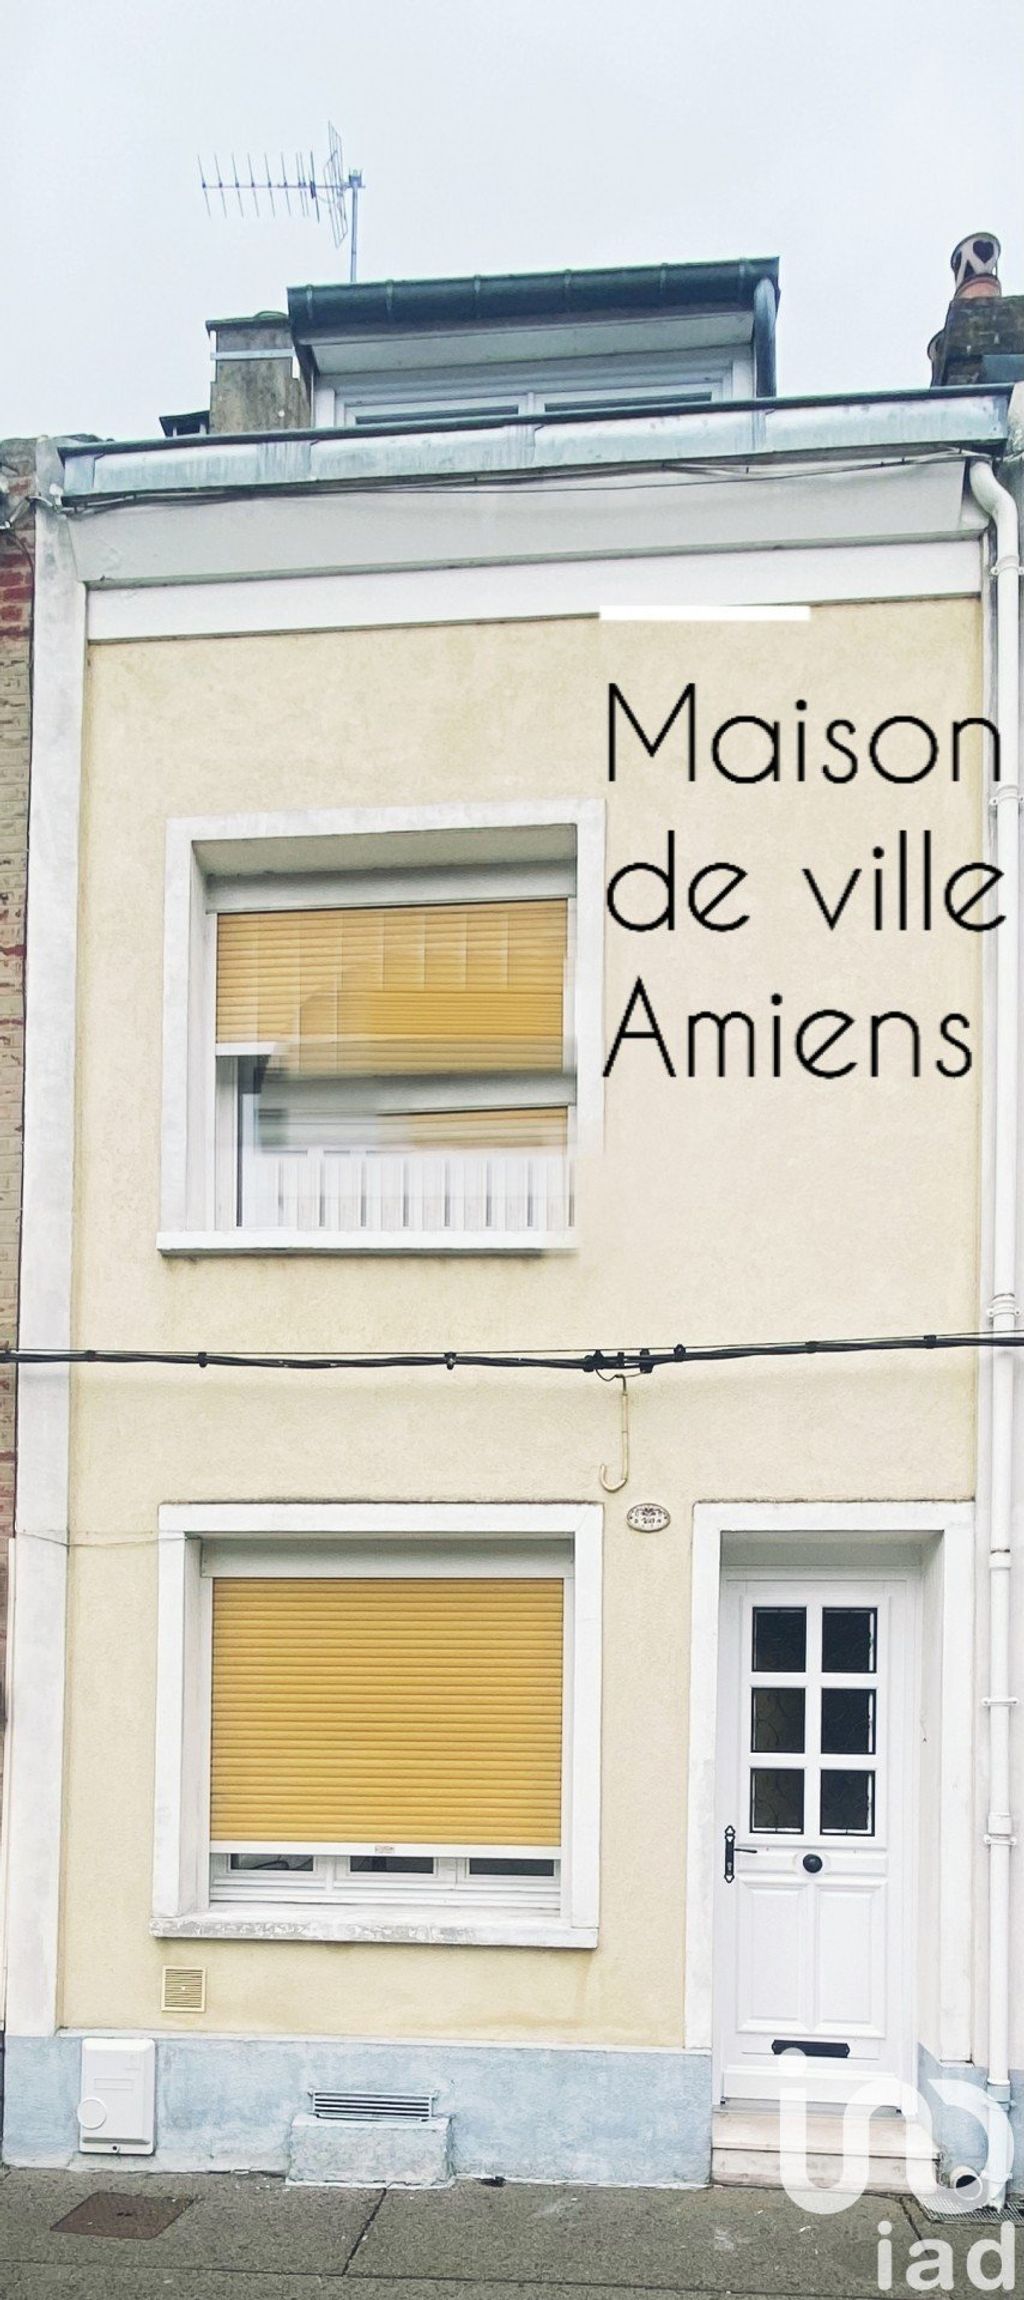 Achat maison à vendre 3 chambres 76 m² - Amiens